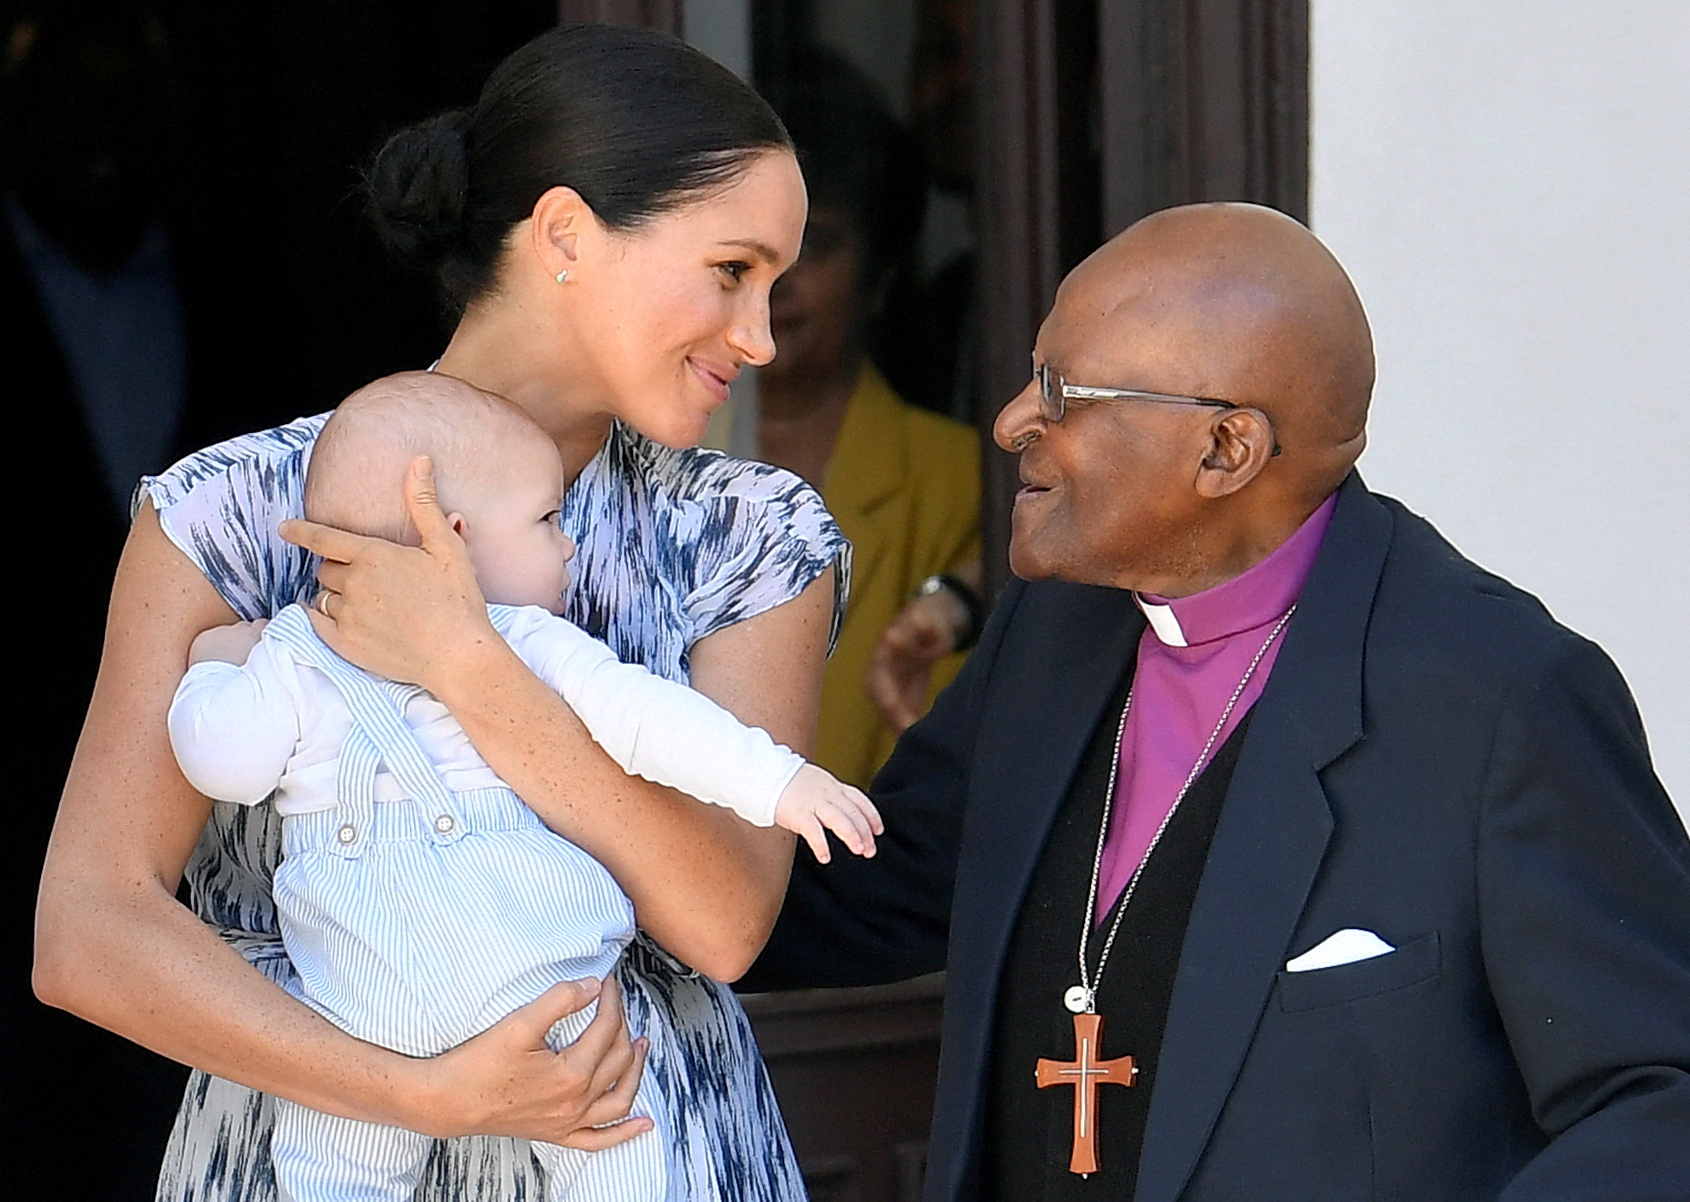 La duquesa de Sussex, con su hijo Archie en brazos, se encuentra con el arzobispo Desmond Tutu en Ciudad del Cabo, Sudáfrica, el 25 de septiembre de 2019 (Reuters)